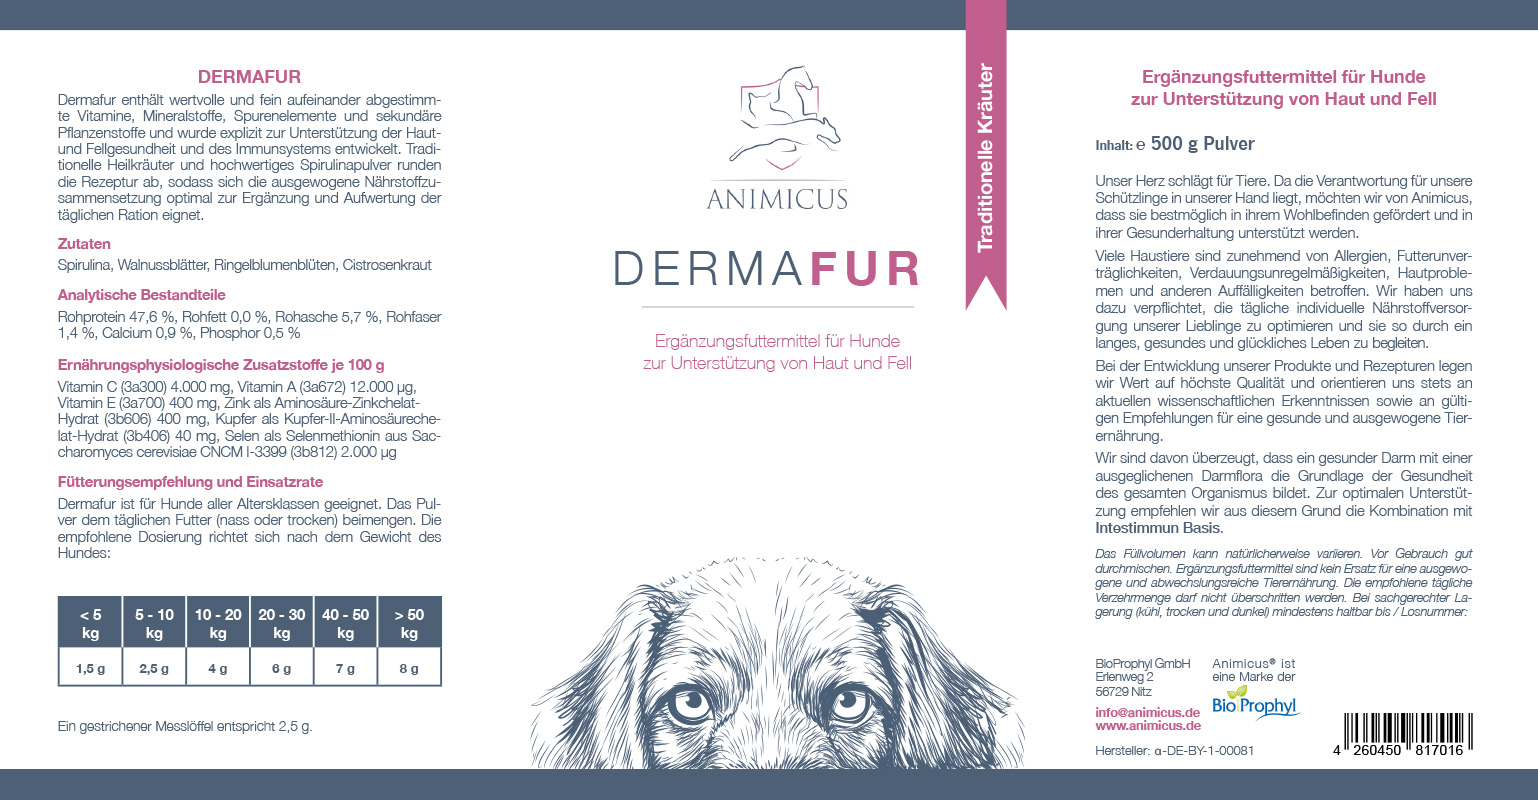 Produktetikett von Animicus Dermafur